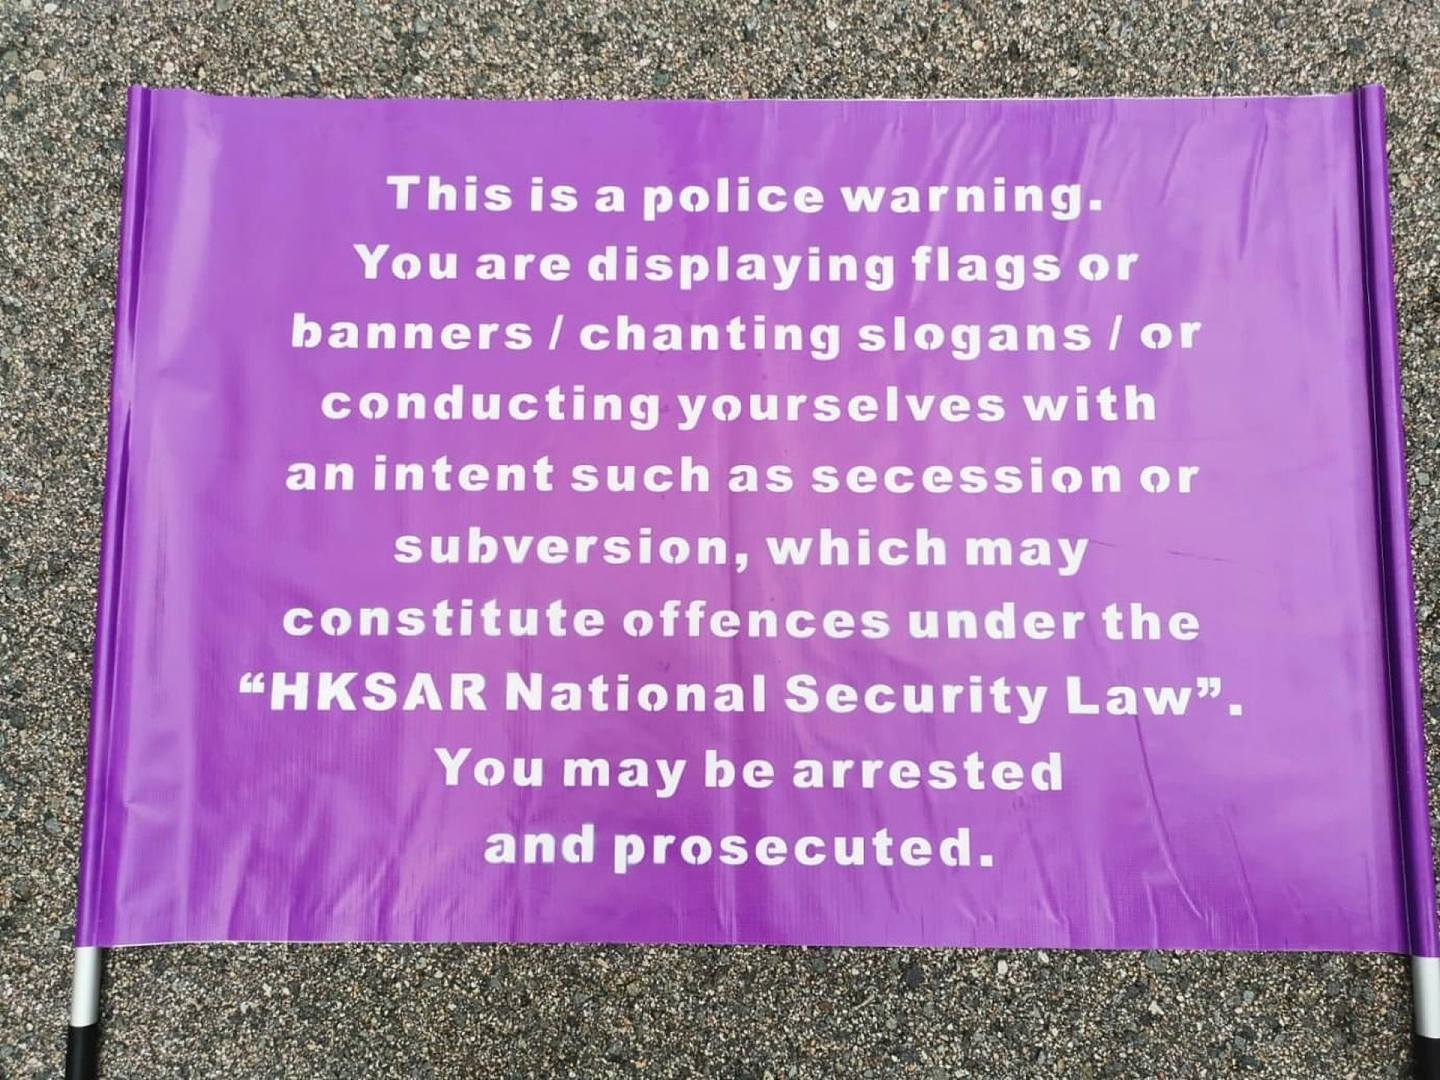 新款「紫色」警告旗，内容提及展示旗帜或横额﹑叫喊口号等，若有分裂国家或颠覆国家政权等意图，可能构成《港区国安法》的罪行。 （网上图片）